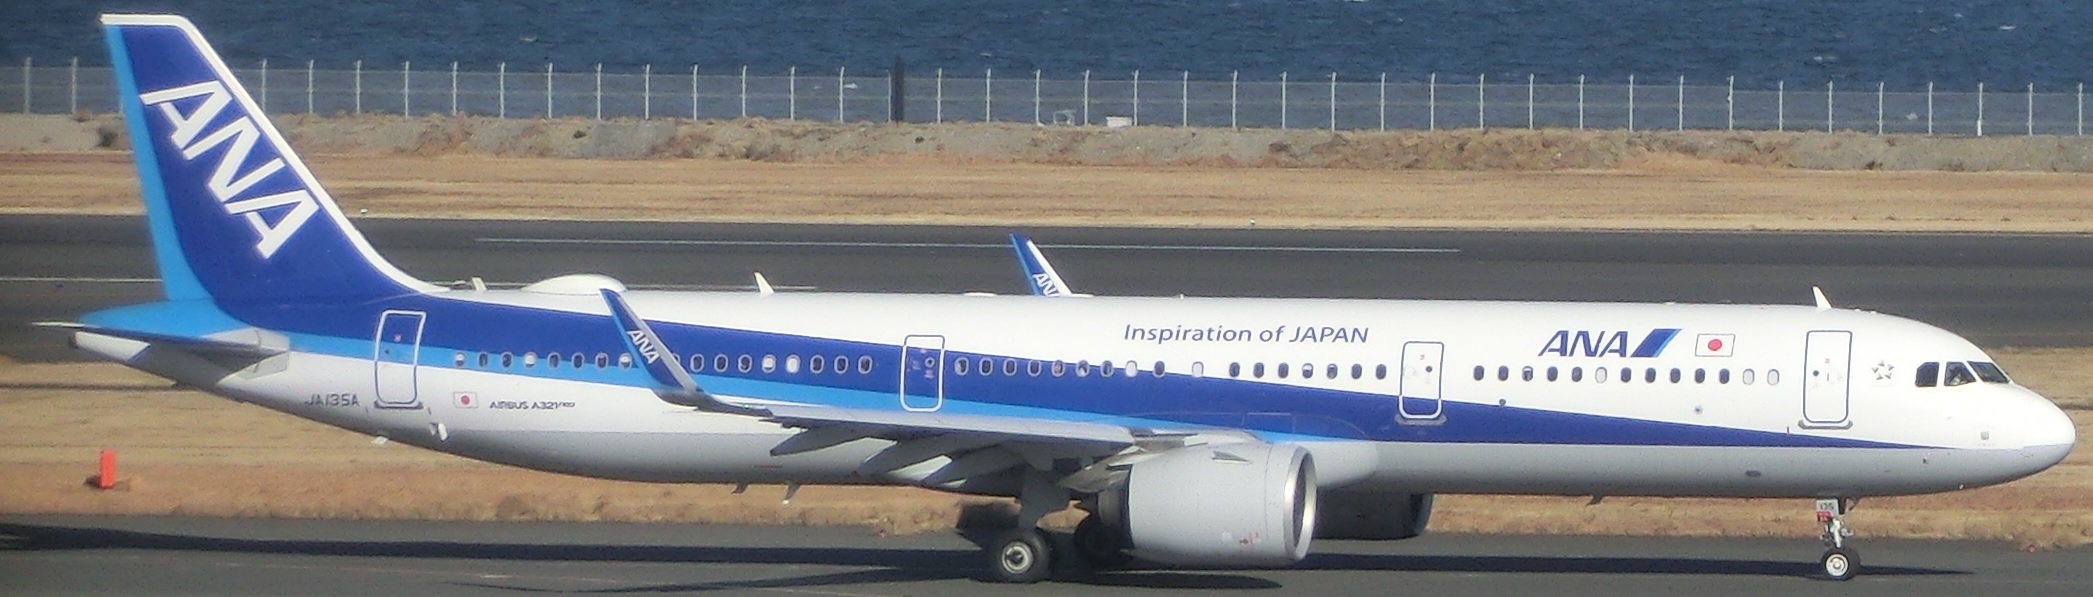 A321JA135A.jpg